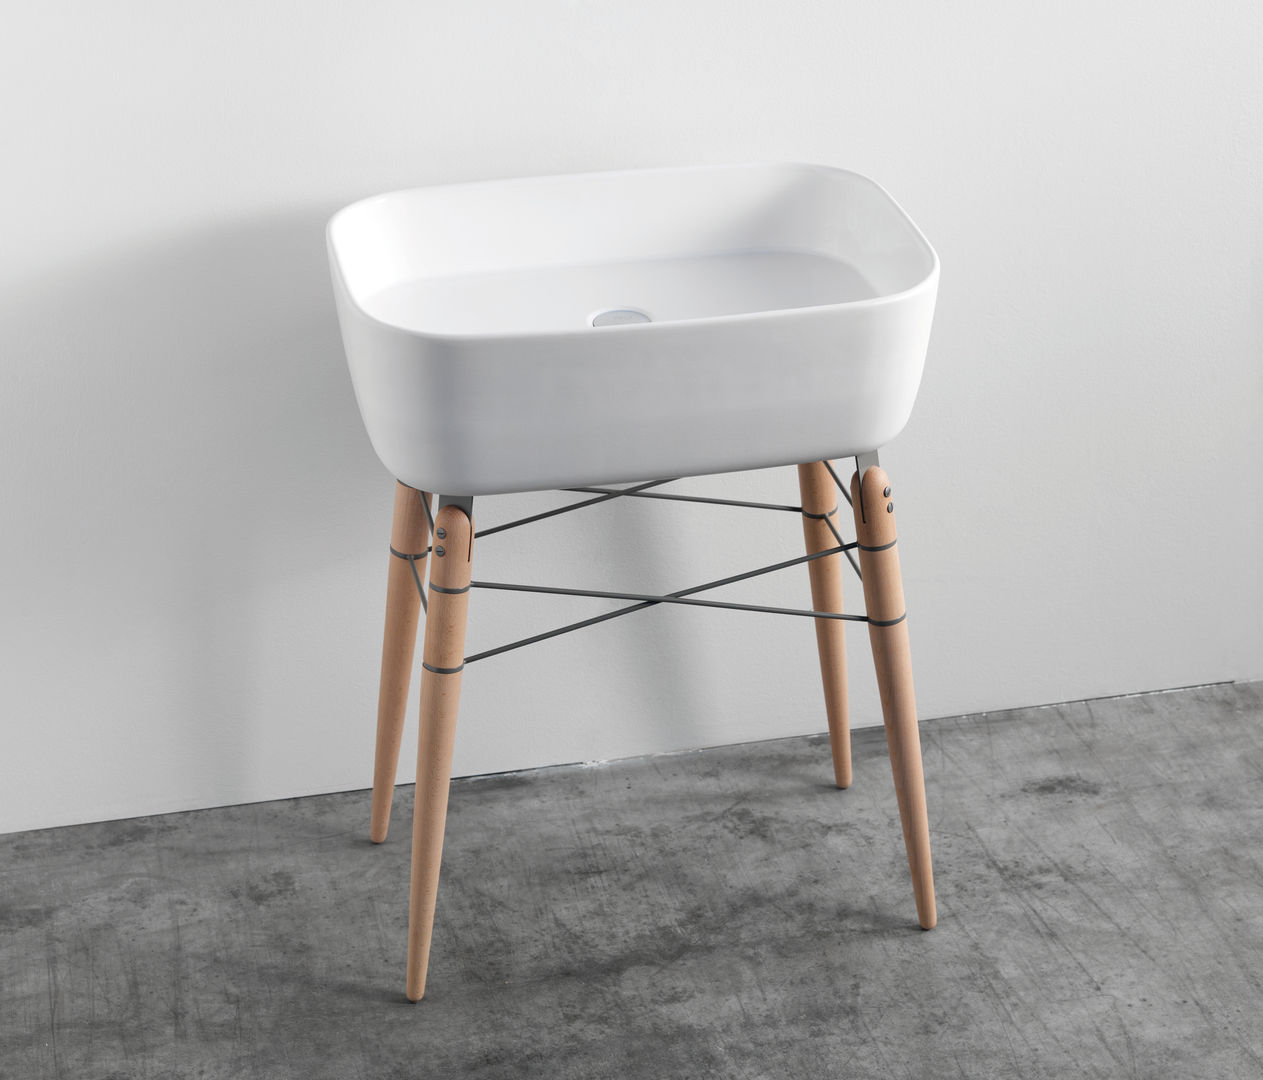 Ray Waschtisch + Spiegel Pragmatic Design® by studio michael hilgers Moderne Badezimmer Waschbecken